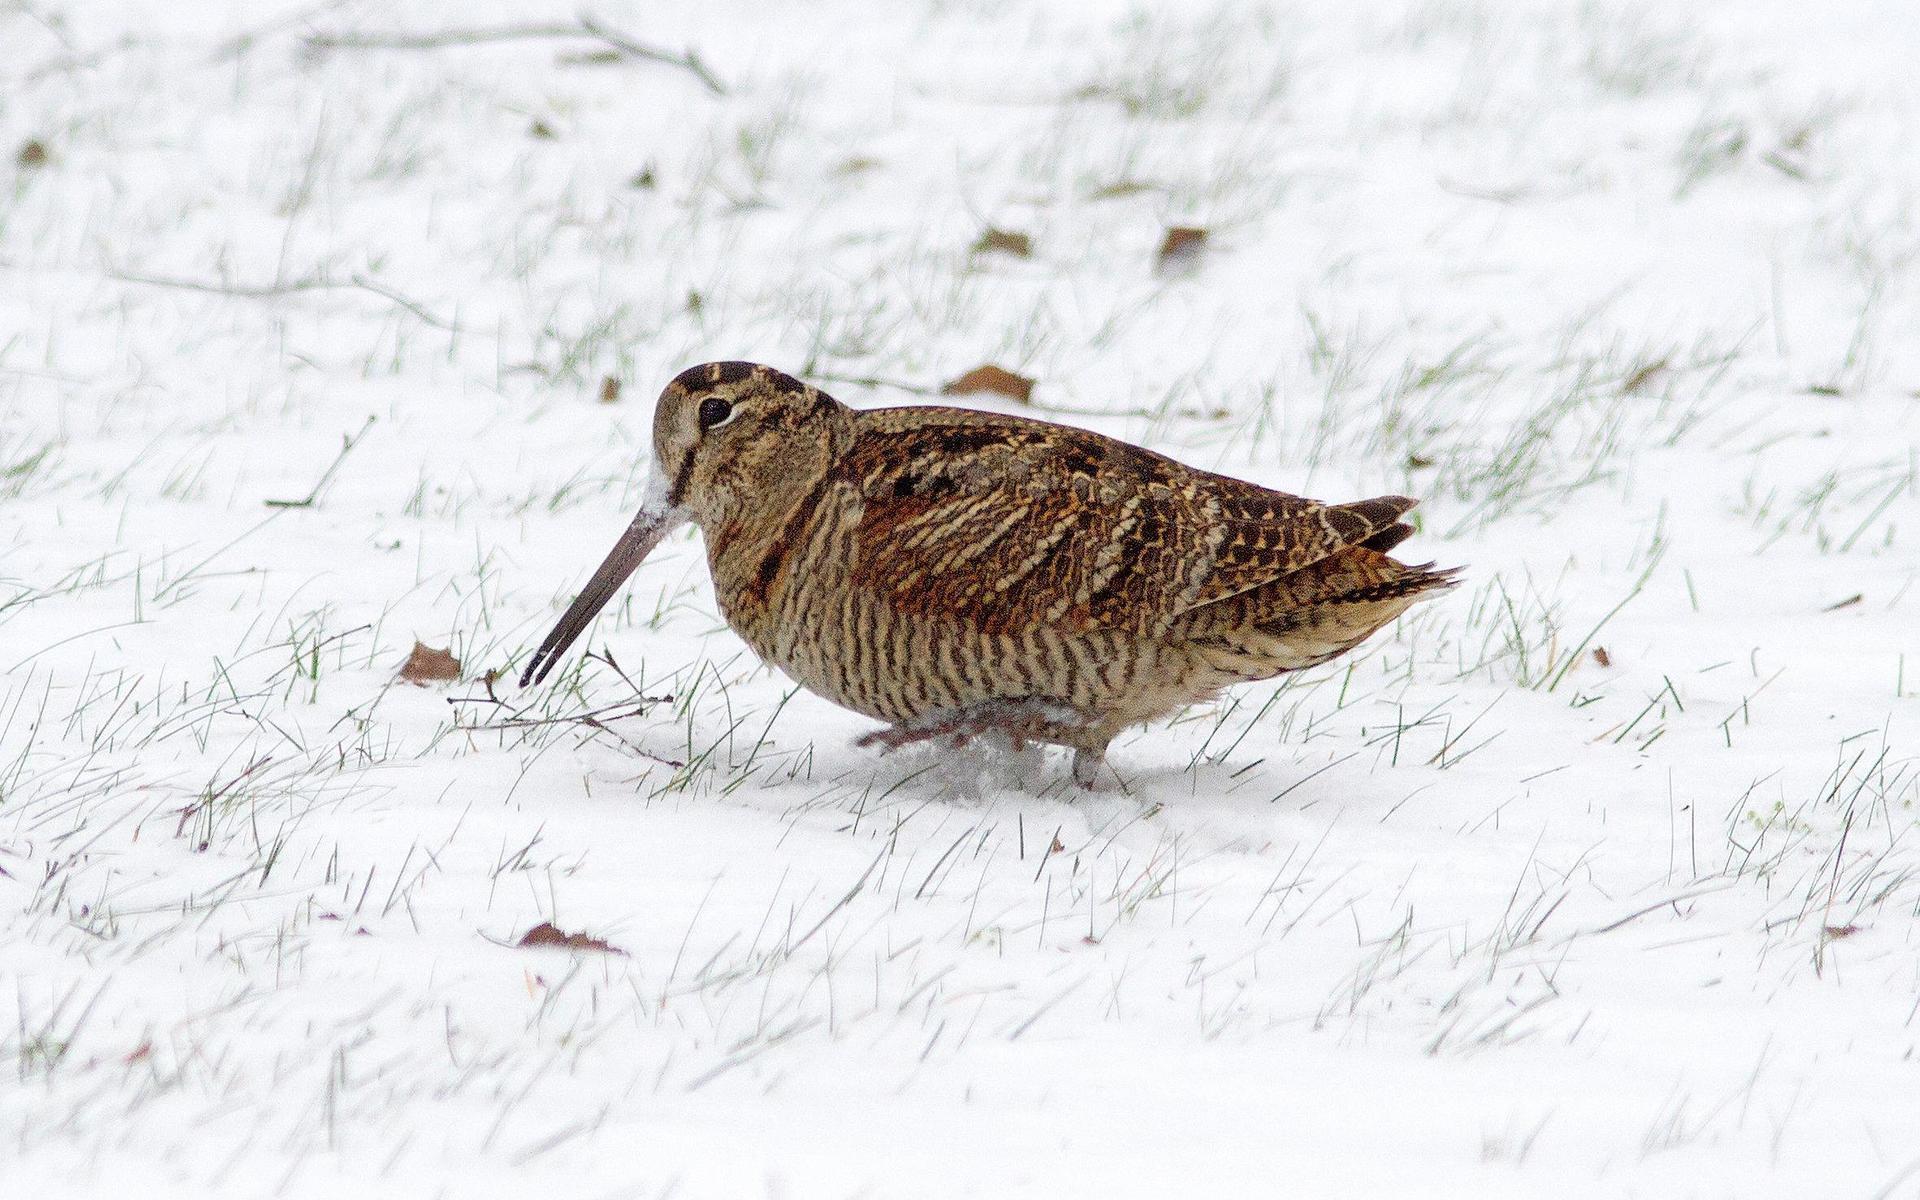 En morkulla kommer gående över en gräsmatta i fullt dagsljus, förgäves letande efter daggmaskar i snön.